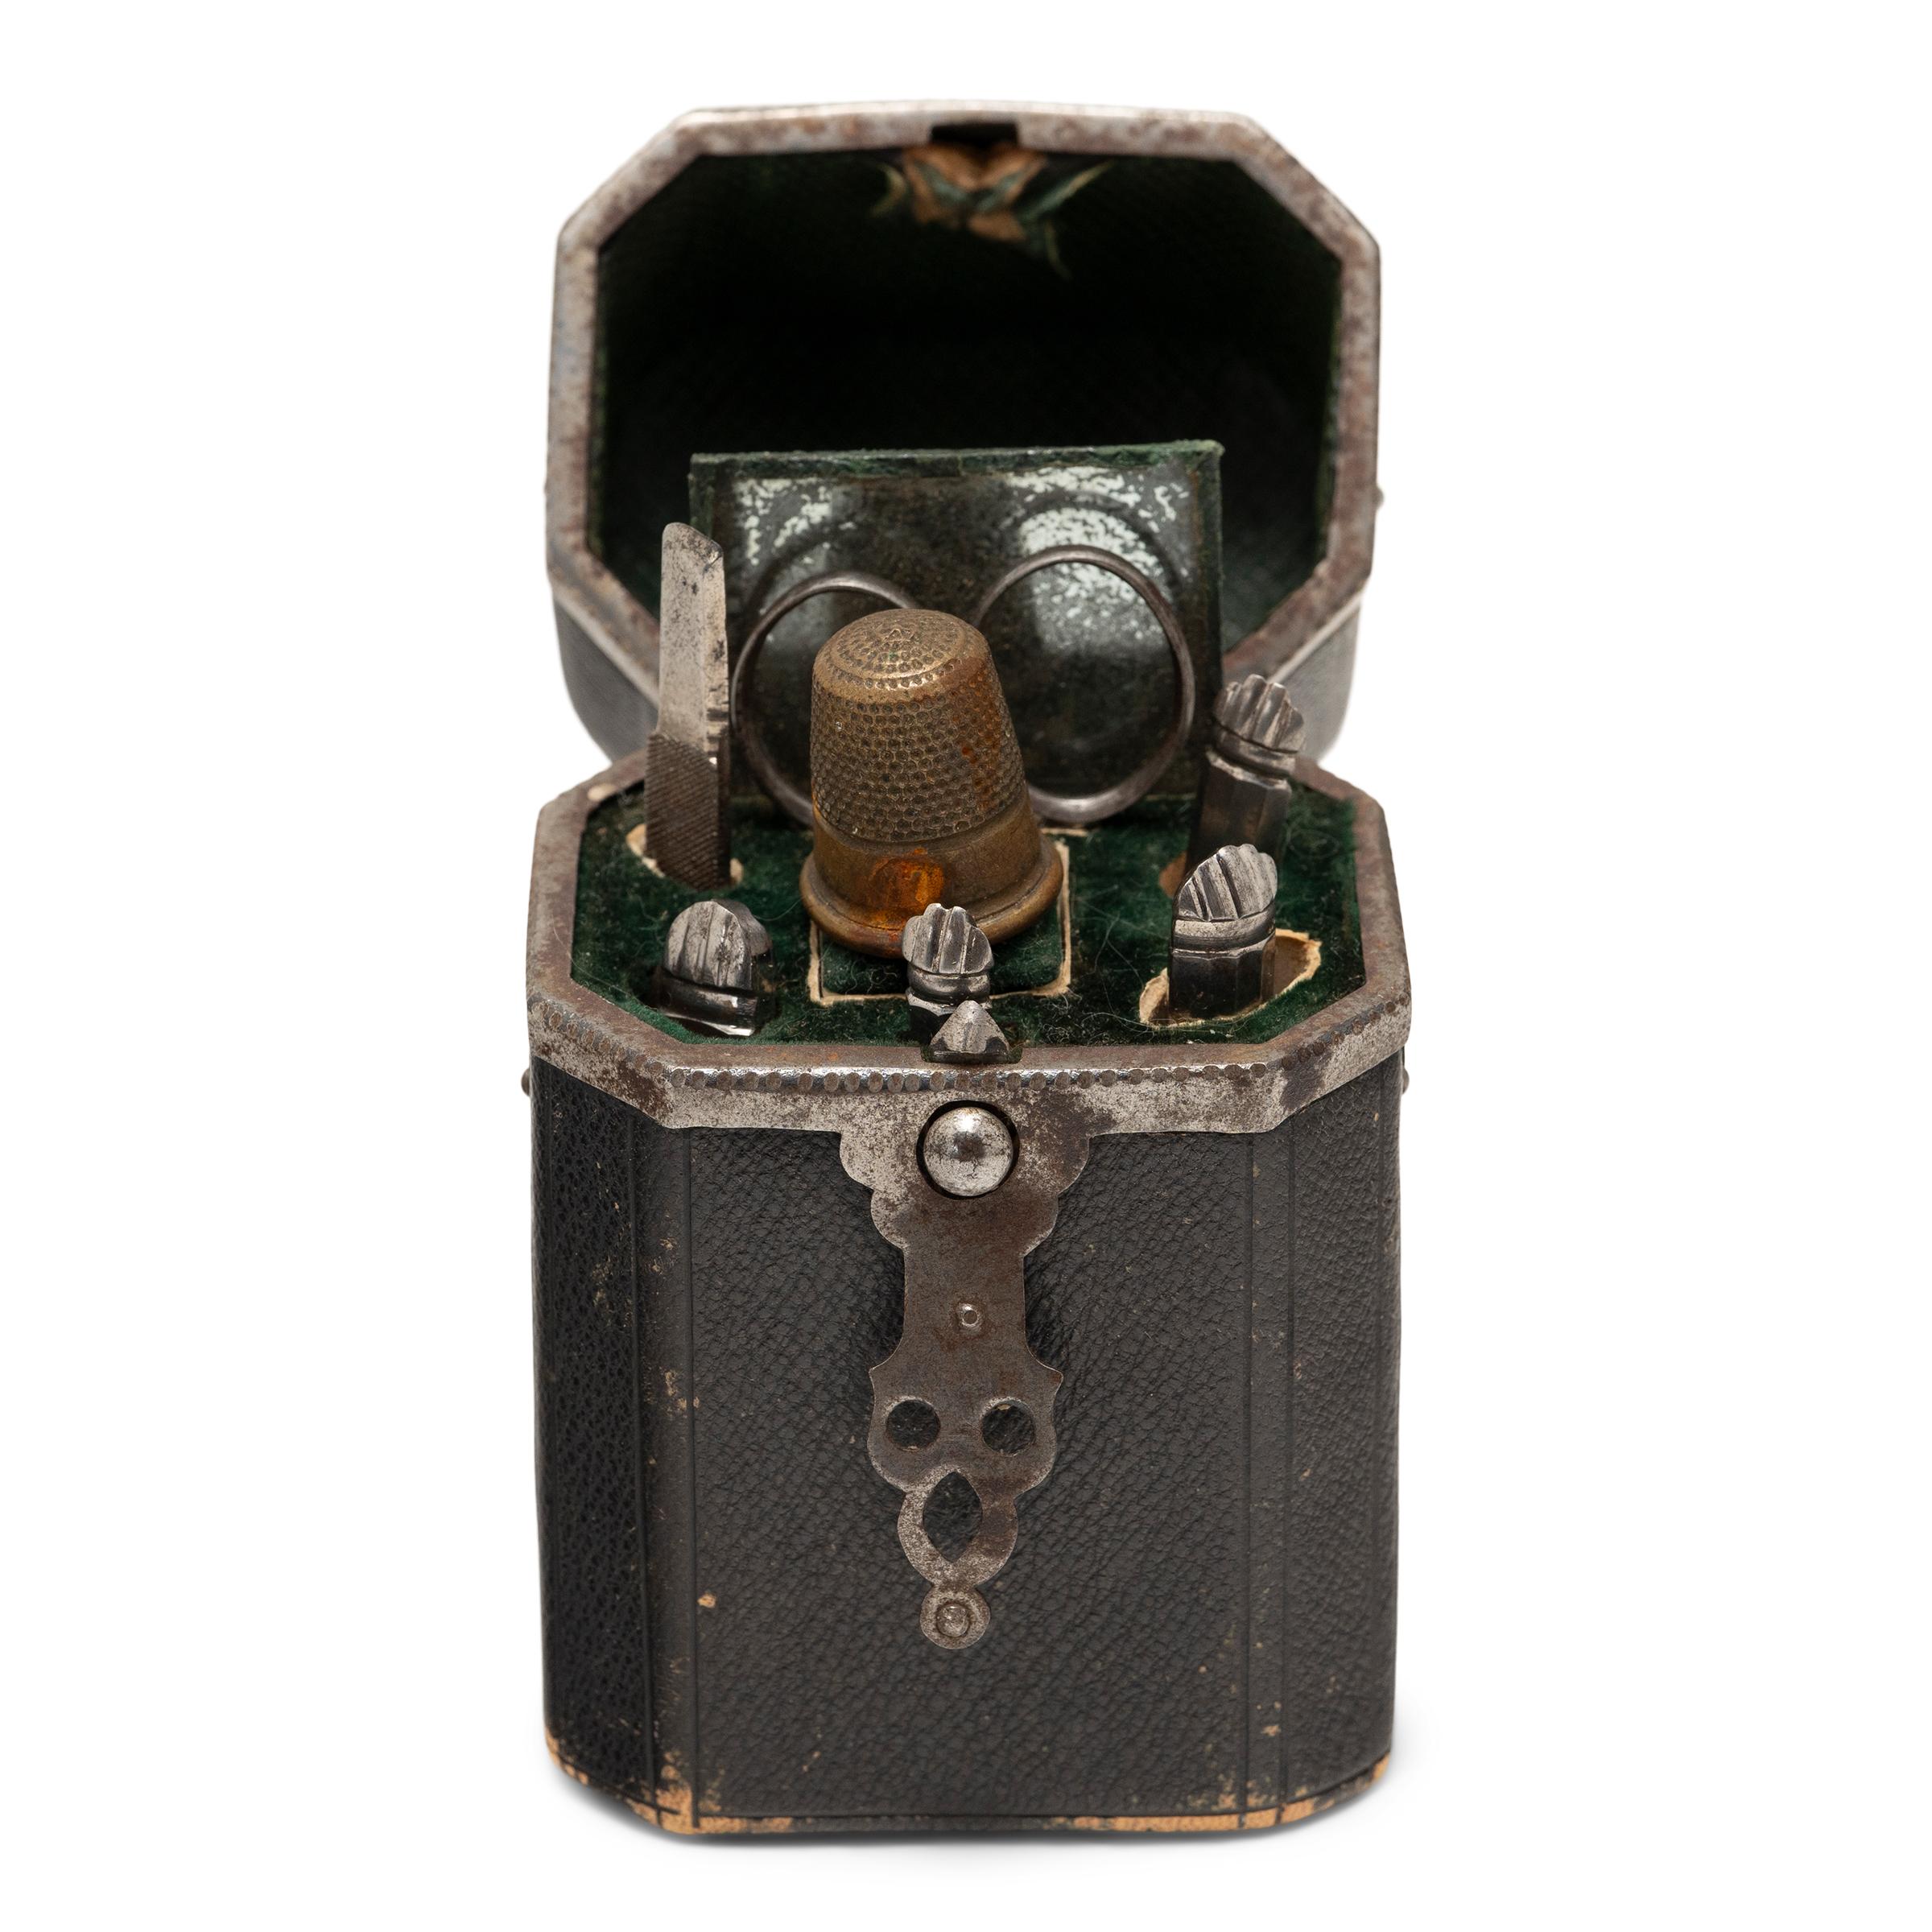 Dieses charmante antike Kästchen stammt aus dem späten 19. Jahrhundert und ist ein Reiseset aus der viktorianischen Zeit mit Näh- und Pflegeutensilien, auch bekannt als Etui oder Nécessaire. Die kompakte Reisetasche ist mit lackiertem Leder und